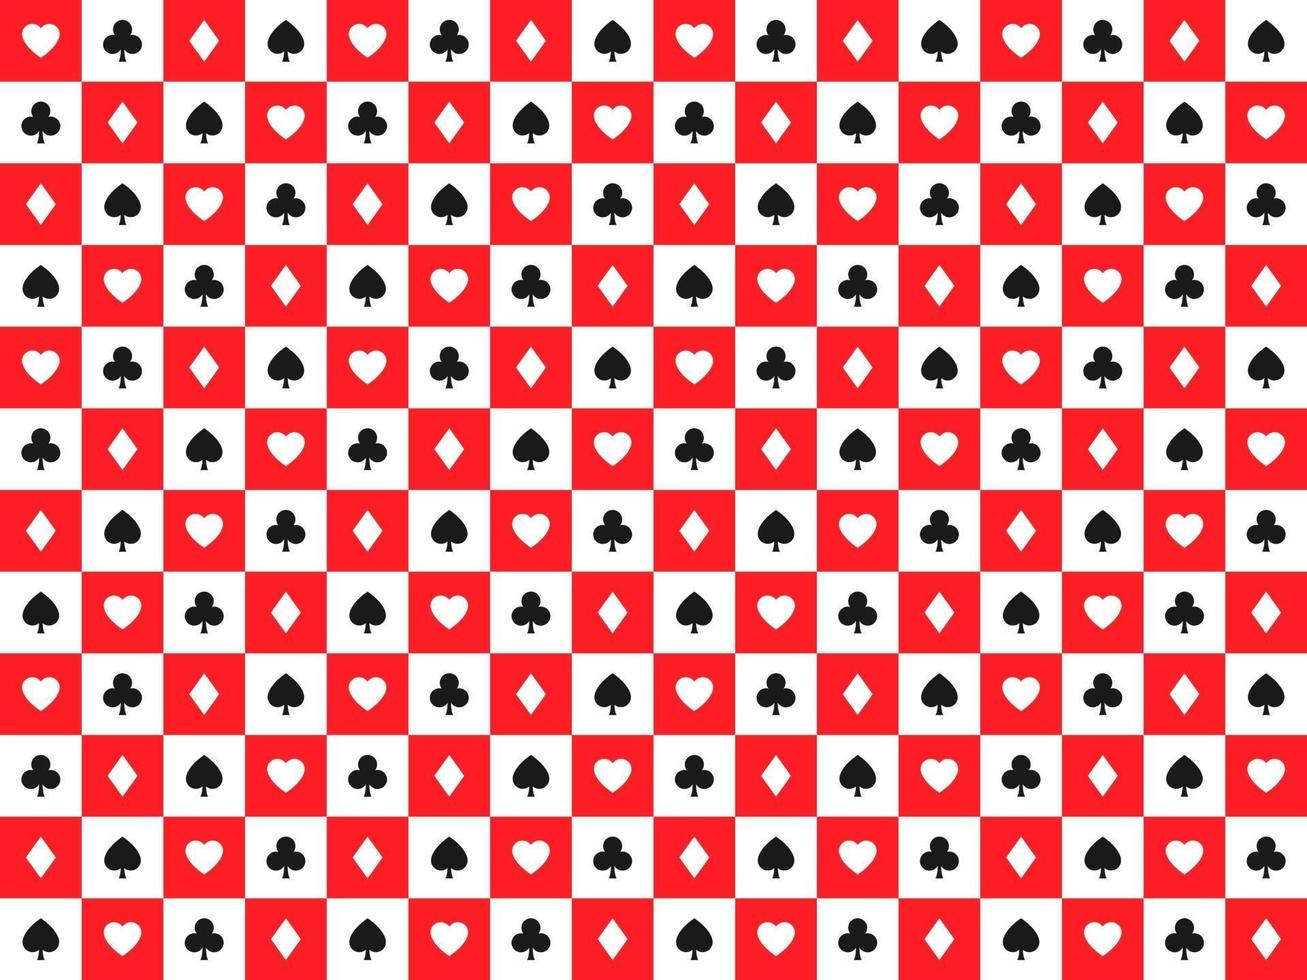 fundo de pôquer de vetor abstrato sem costura com cartas de jogar sinais símbolos brancos e pretos em quadrados brancos e vermelhos.